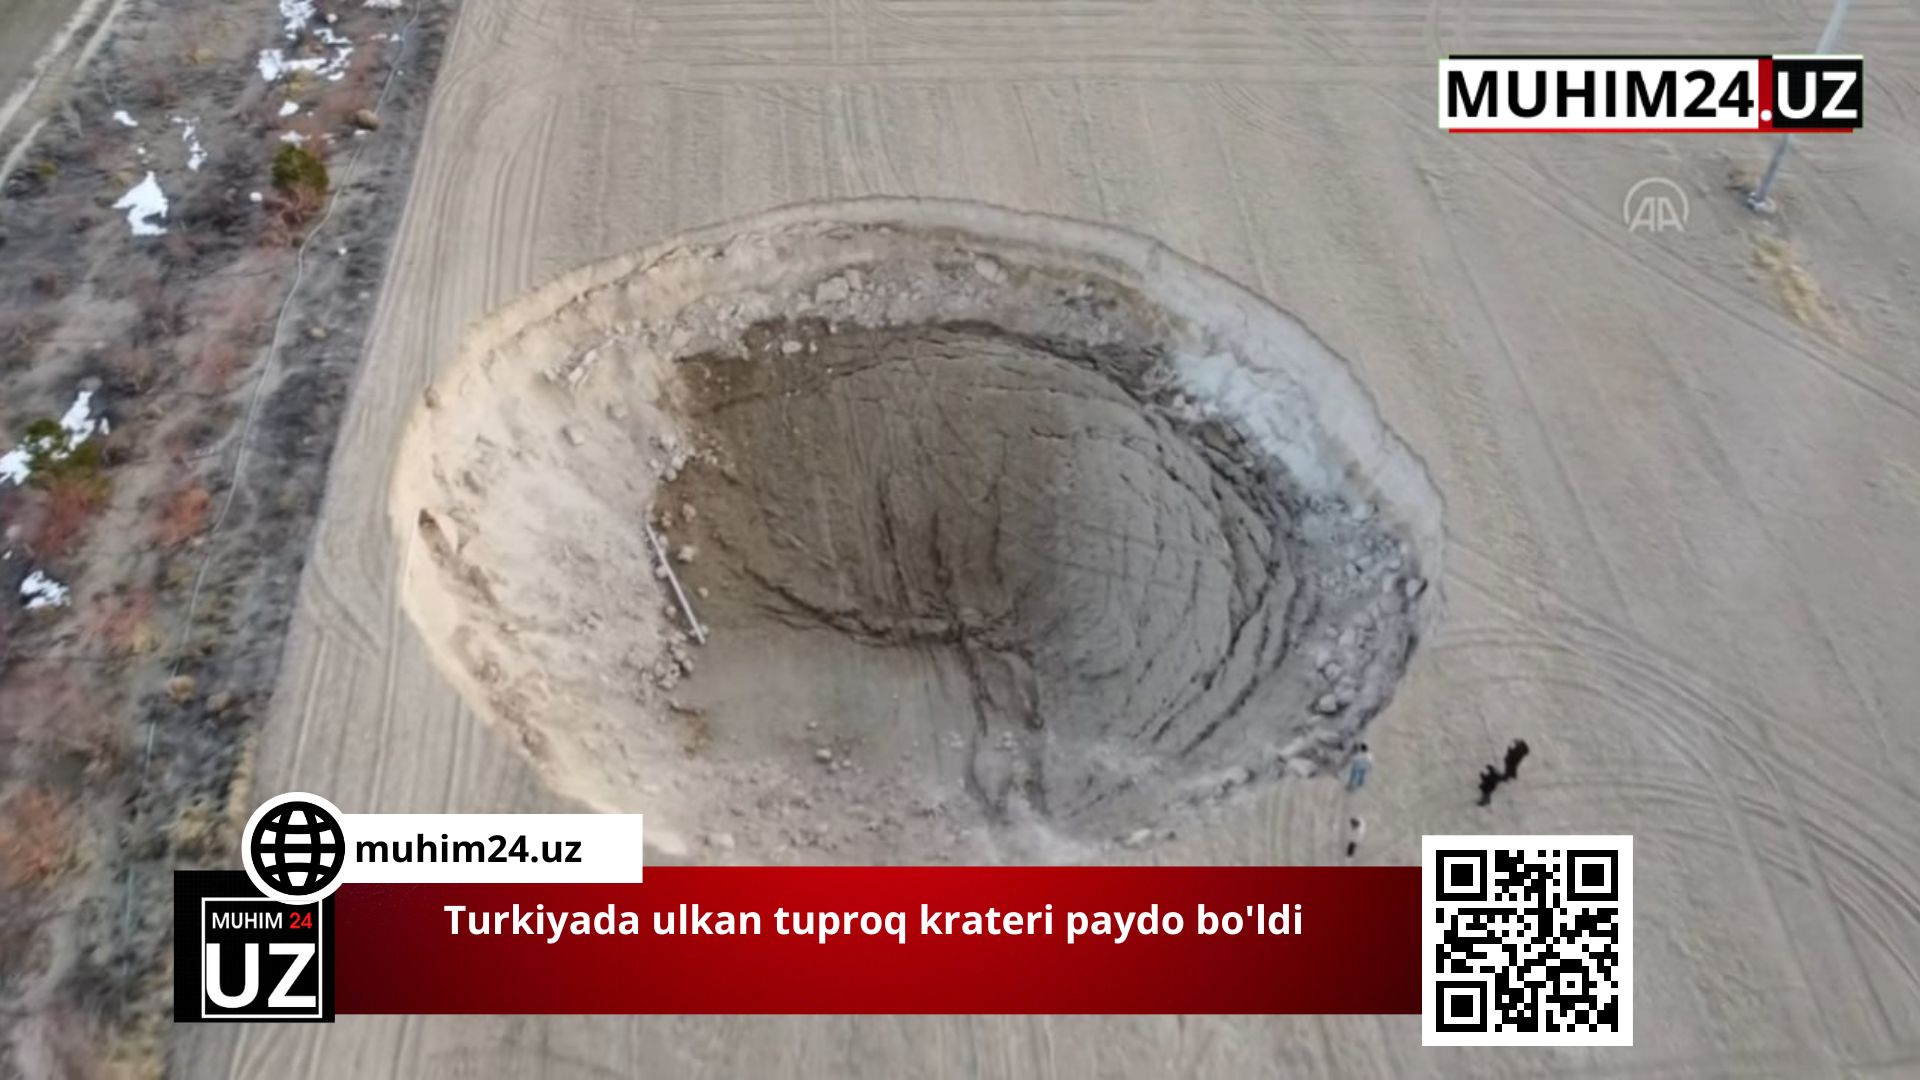 Turkiyada ulkan tuproq krateri paydo bo’ldi